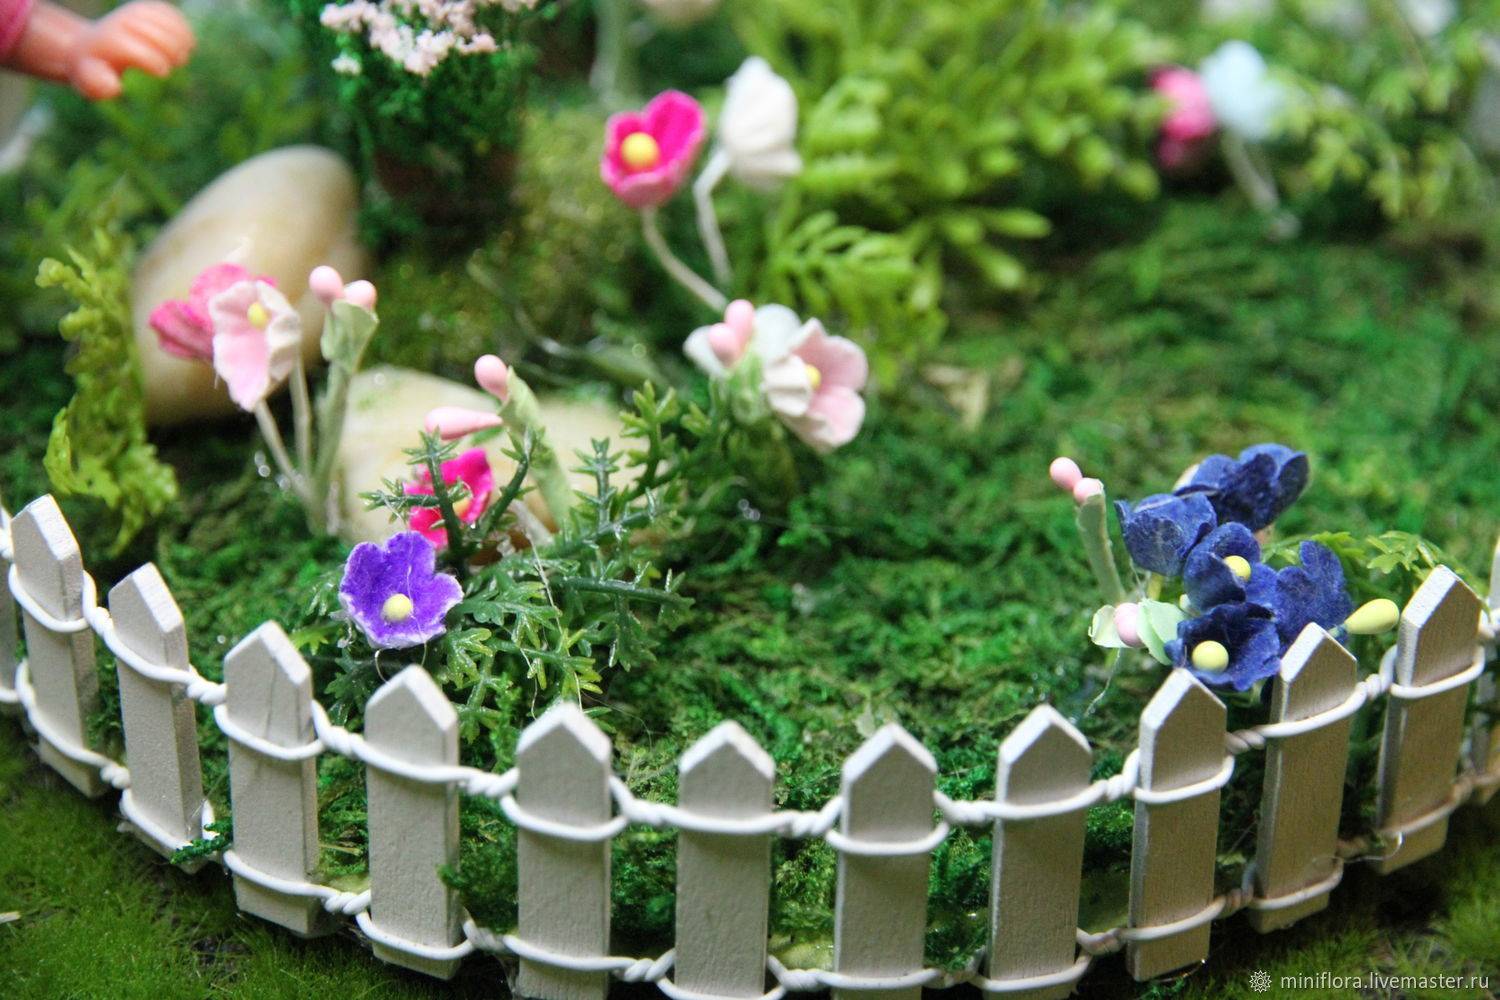 Бордюр для цветников - фото идей, как оформить декоративный заборчик для цветов